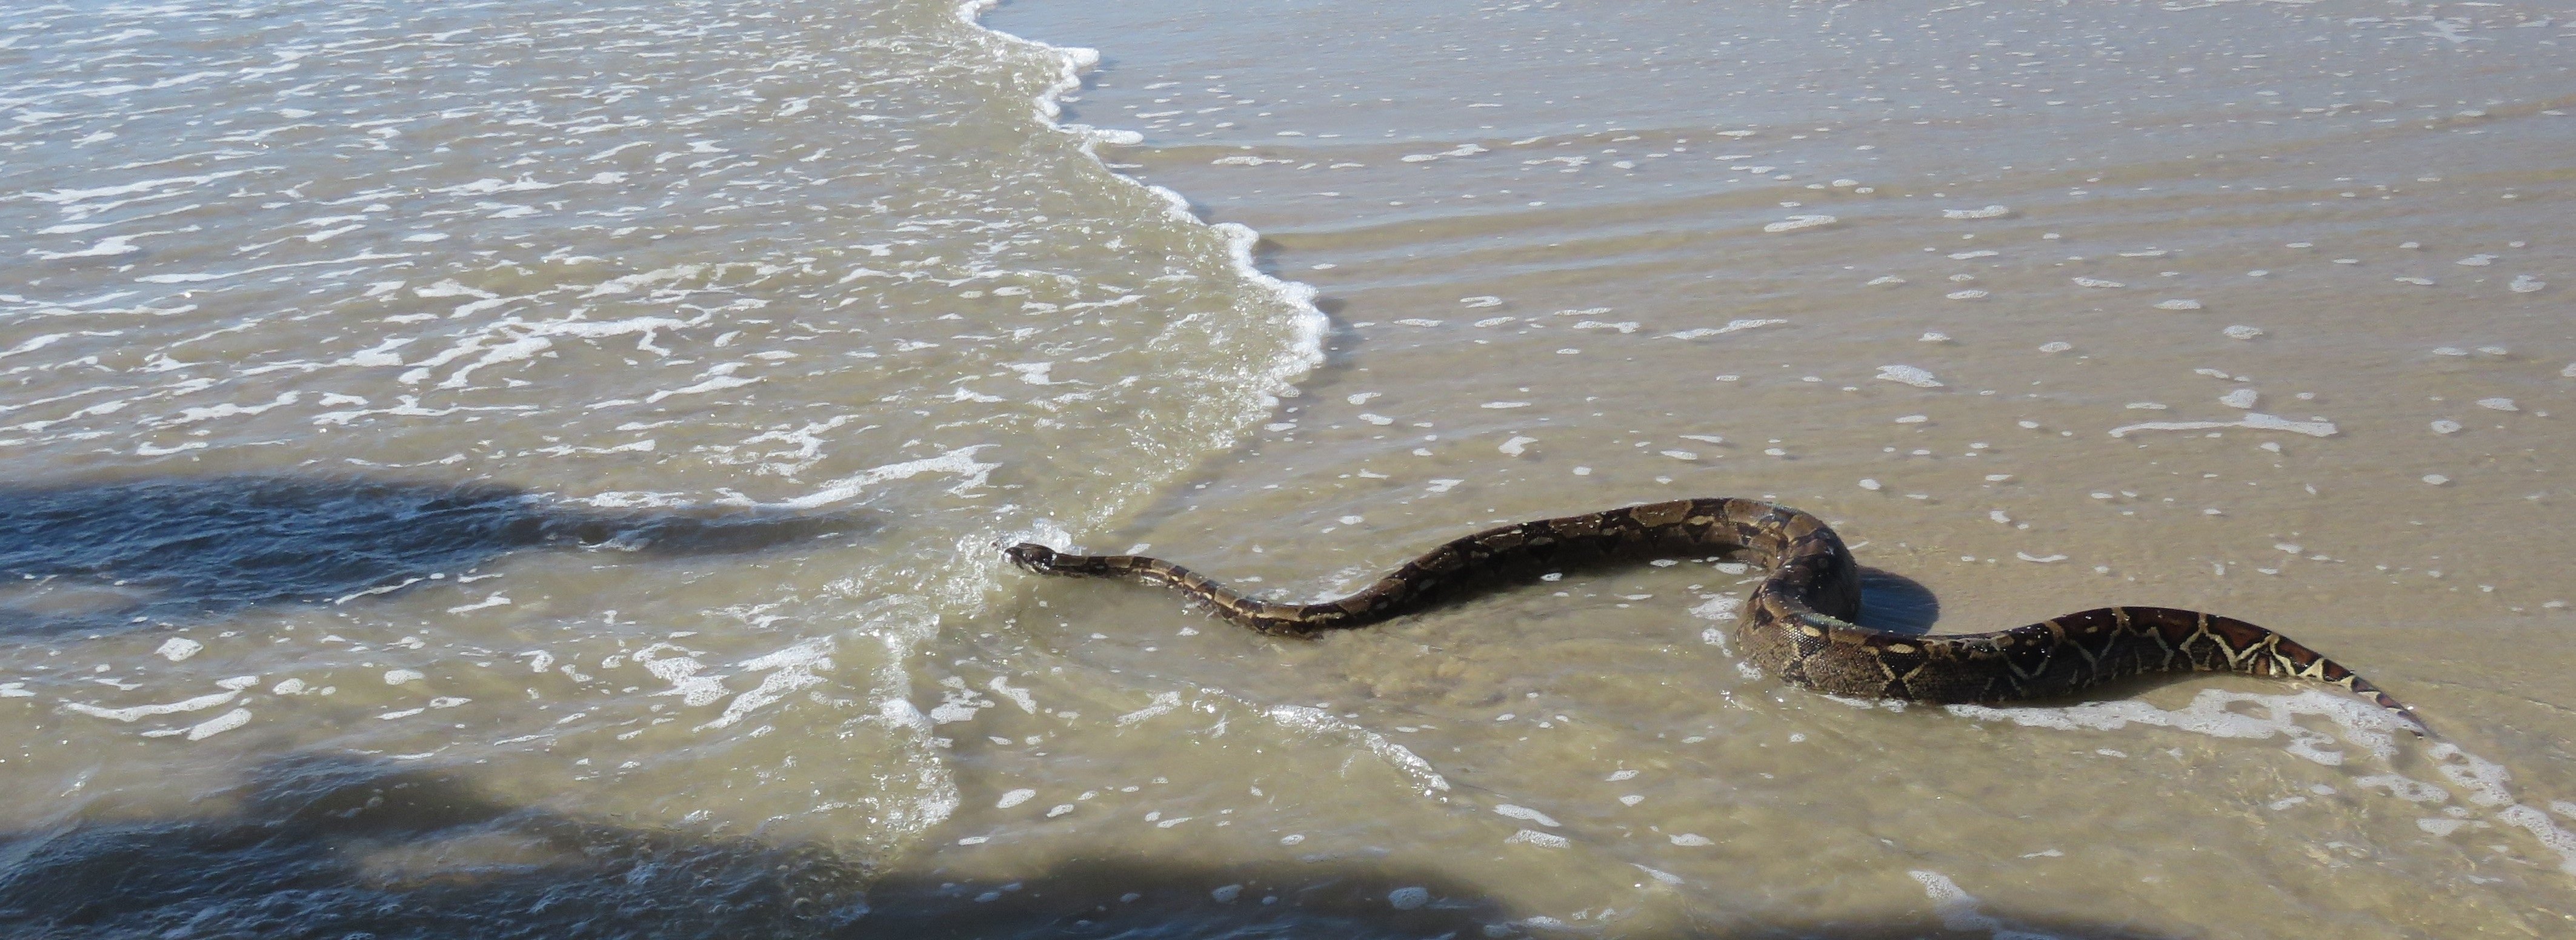 Карадагские змеи в анапе. Морские змеи в черном море. Карадагский змей в черном море. Черноморская морская змея. Морские гадюки Азовское море.